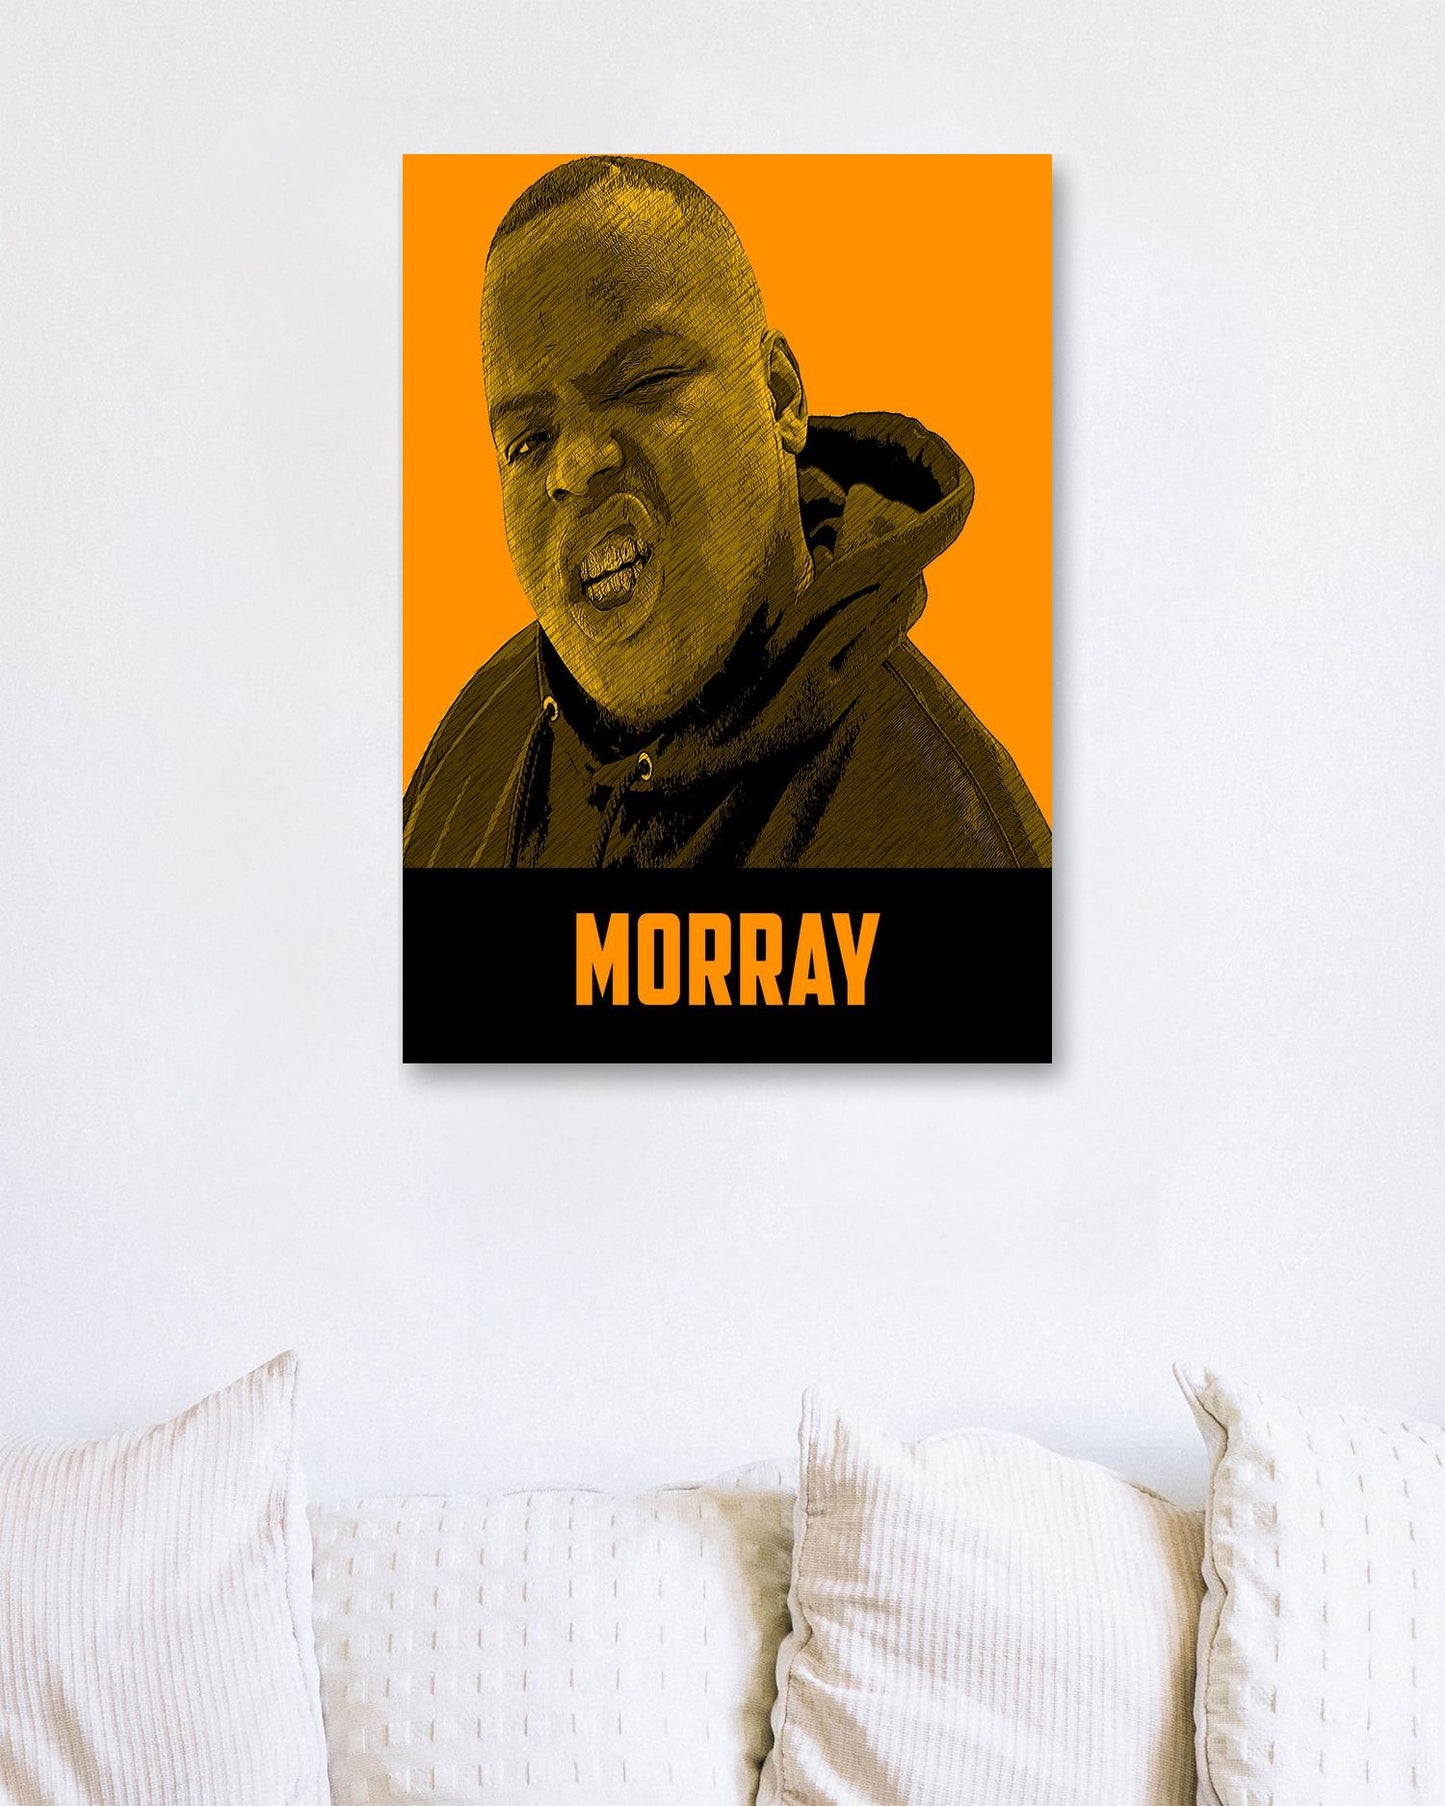 Morray - @LegendArt